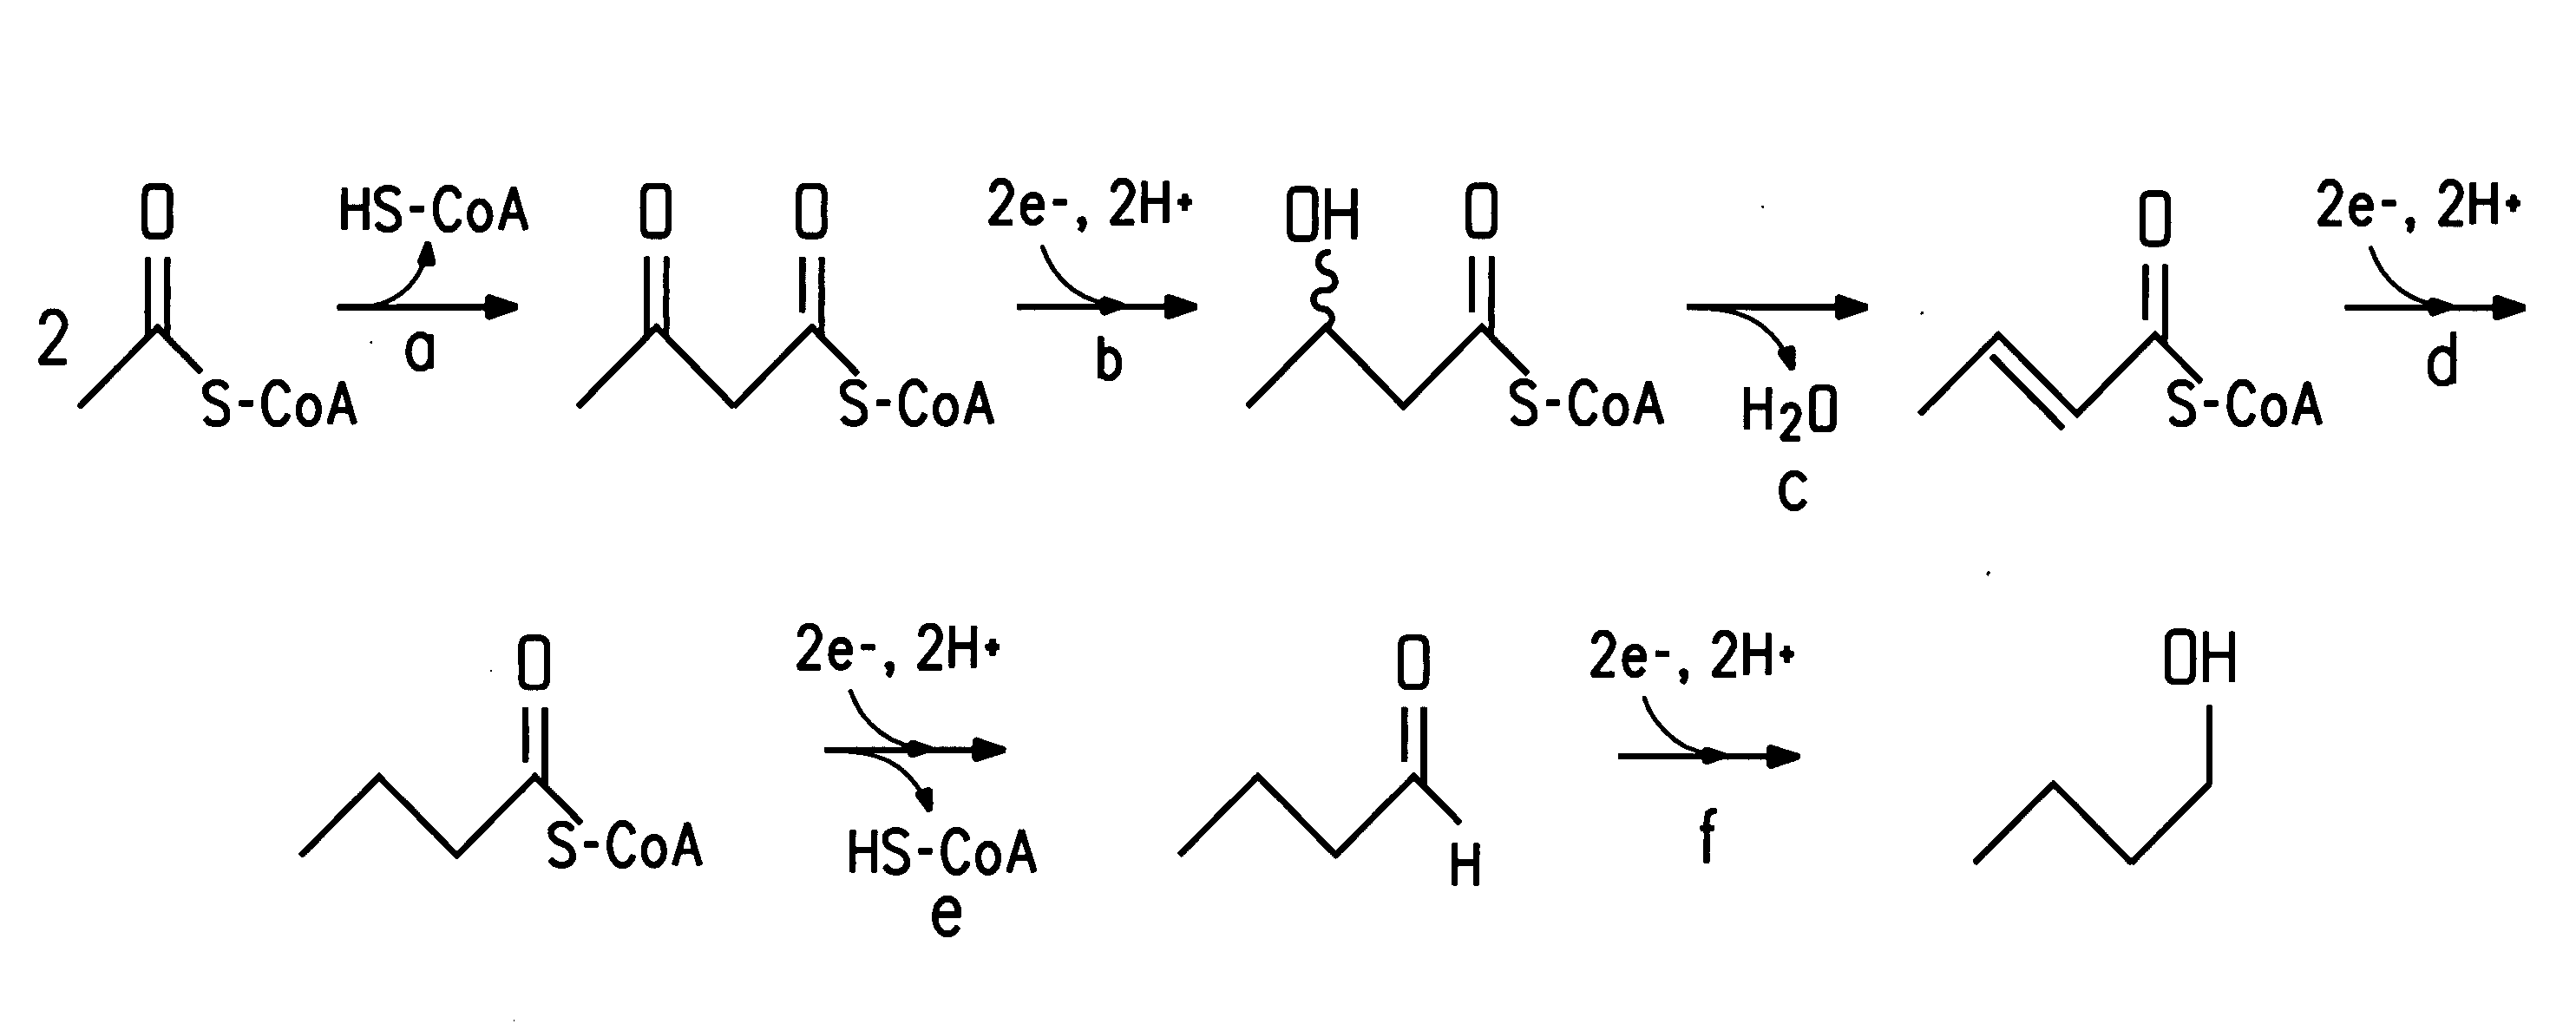 Fermentive production of four carbon alcohols